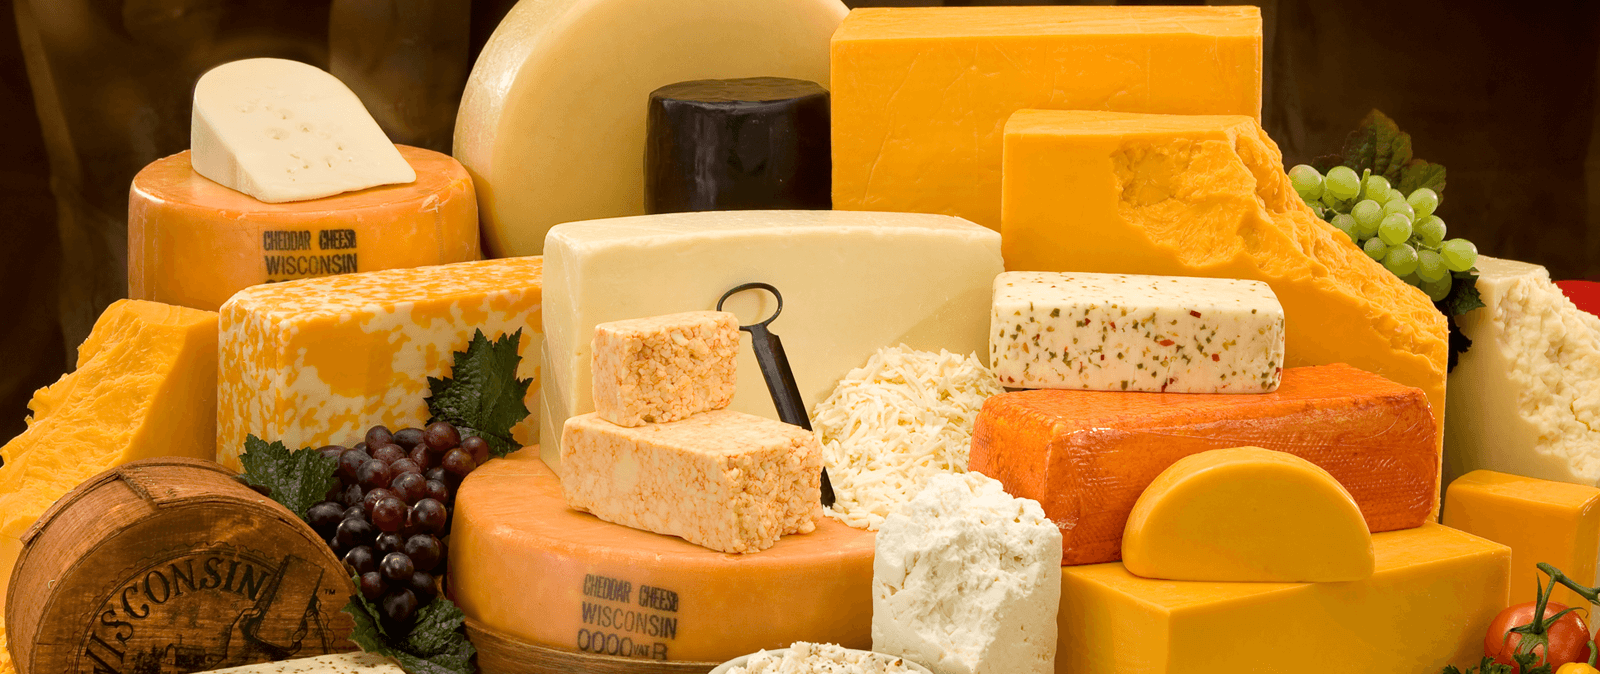 Απίστευτο κι όμως αληθινό: Το τυρί είναι το ίδιο εθιστικό με τα ναρκωτικά!